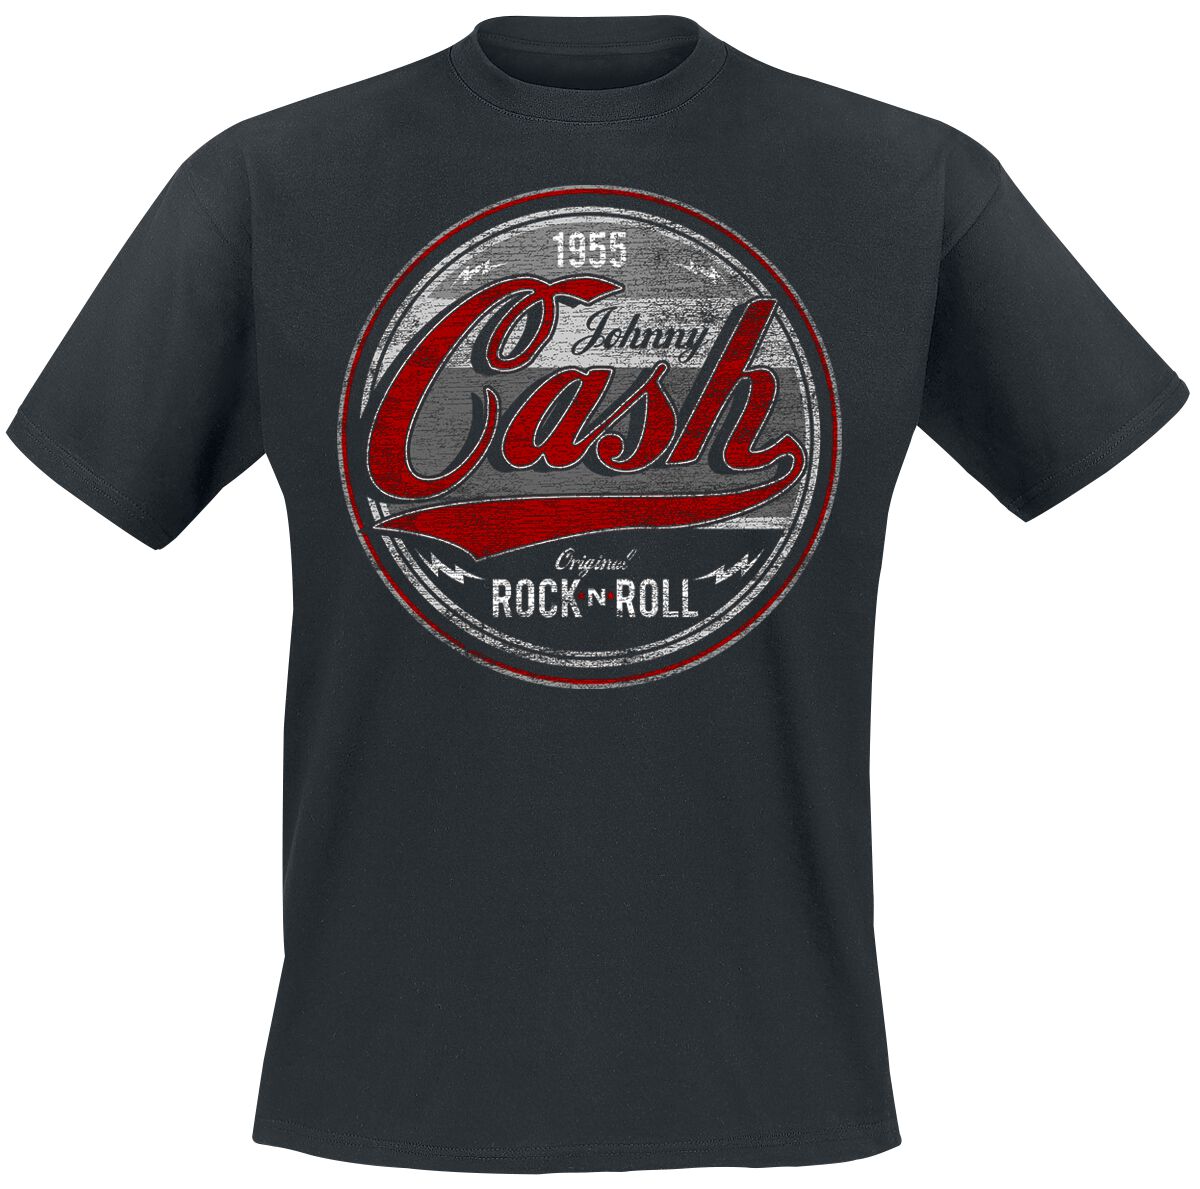 Johnny Cash T-Shirt - Original Rock n Roll Red/Grey - S bis 4XL - für Männer - Größe M - schwarz  - Lizenziertes Merchandise!